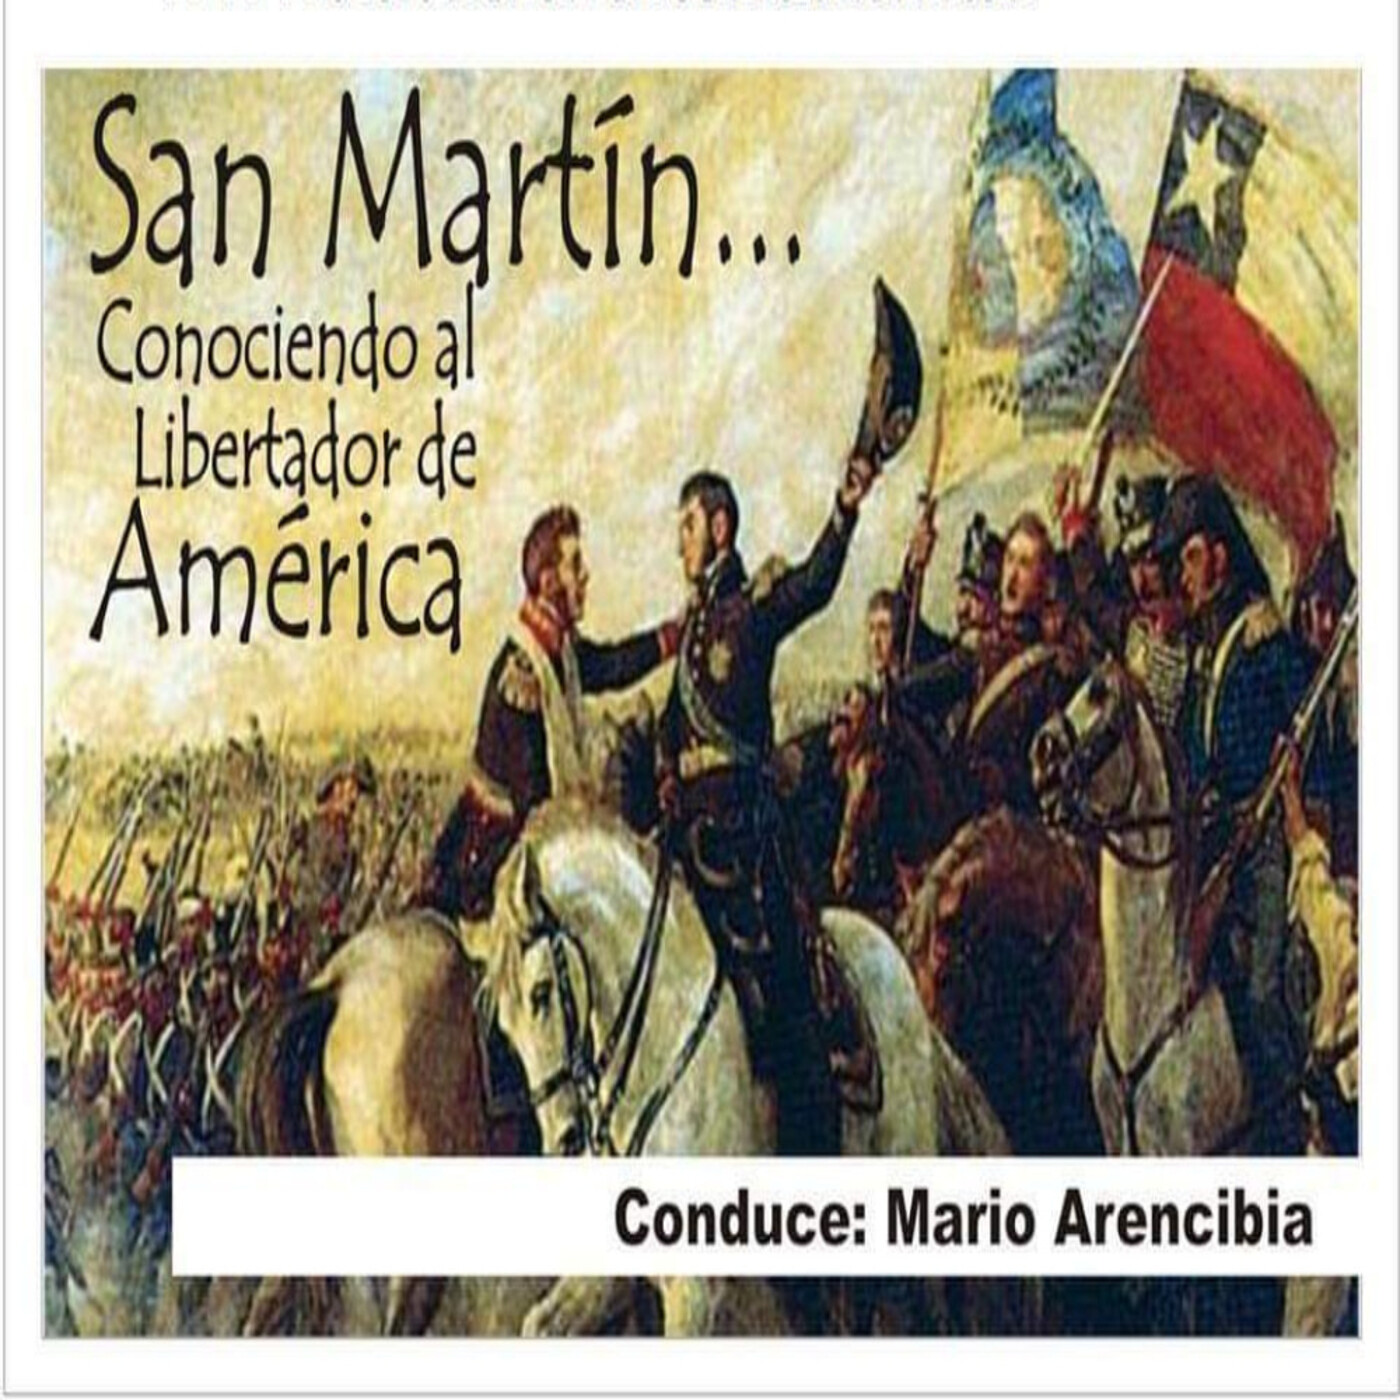 29/04/2023 San Martín (Conociendo al Libertador de America)